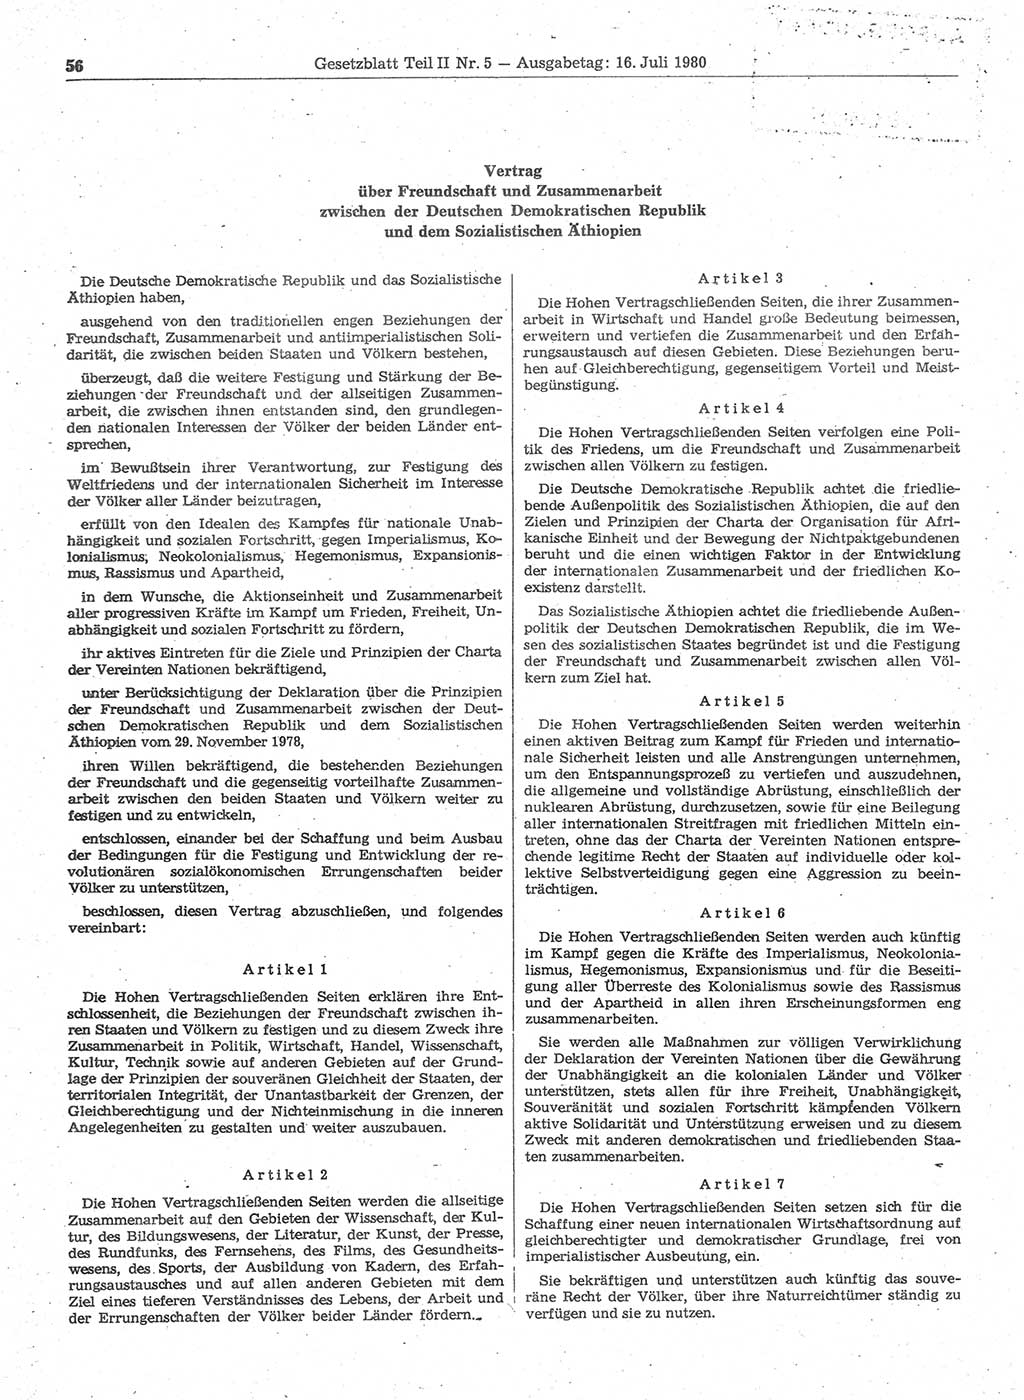 Gesetzblatt (GBl.) der Deutschen Demokratischen Republik (DDR) Teil ⅠⅠ 1980, Seite 56 (GBl. DDR ⅠⅠ 1980, S. 56)